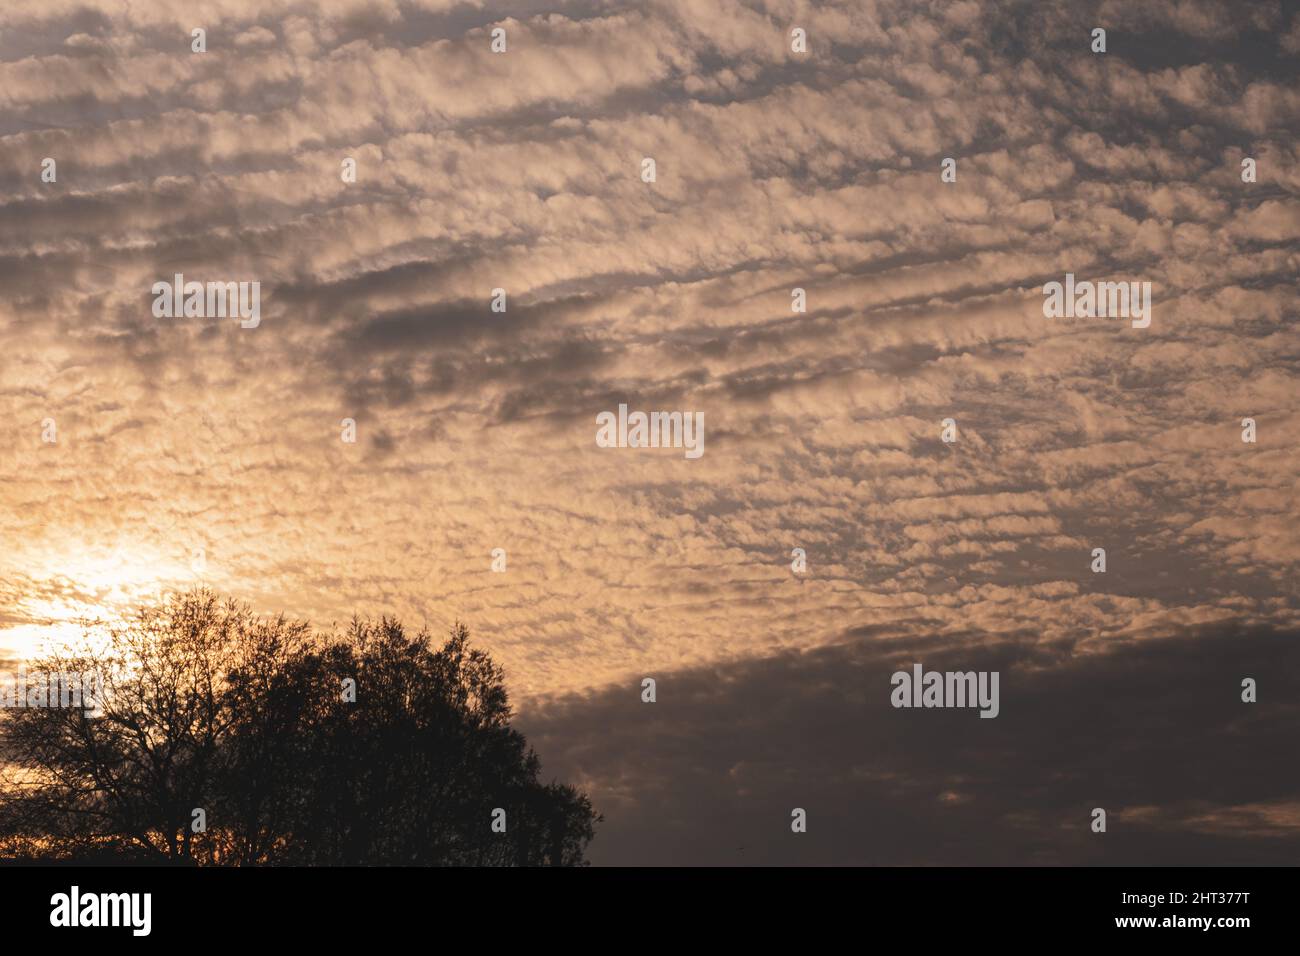 Tramonto con cielo nuvoloso e sfondo con silhouette di alberi, bella immagine di cielo puro al tramonto estivo. Foto Stock